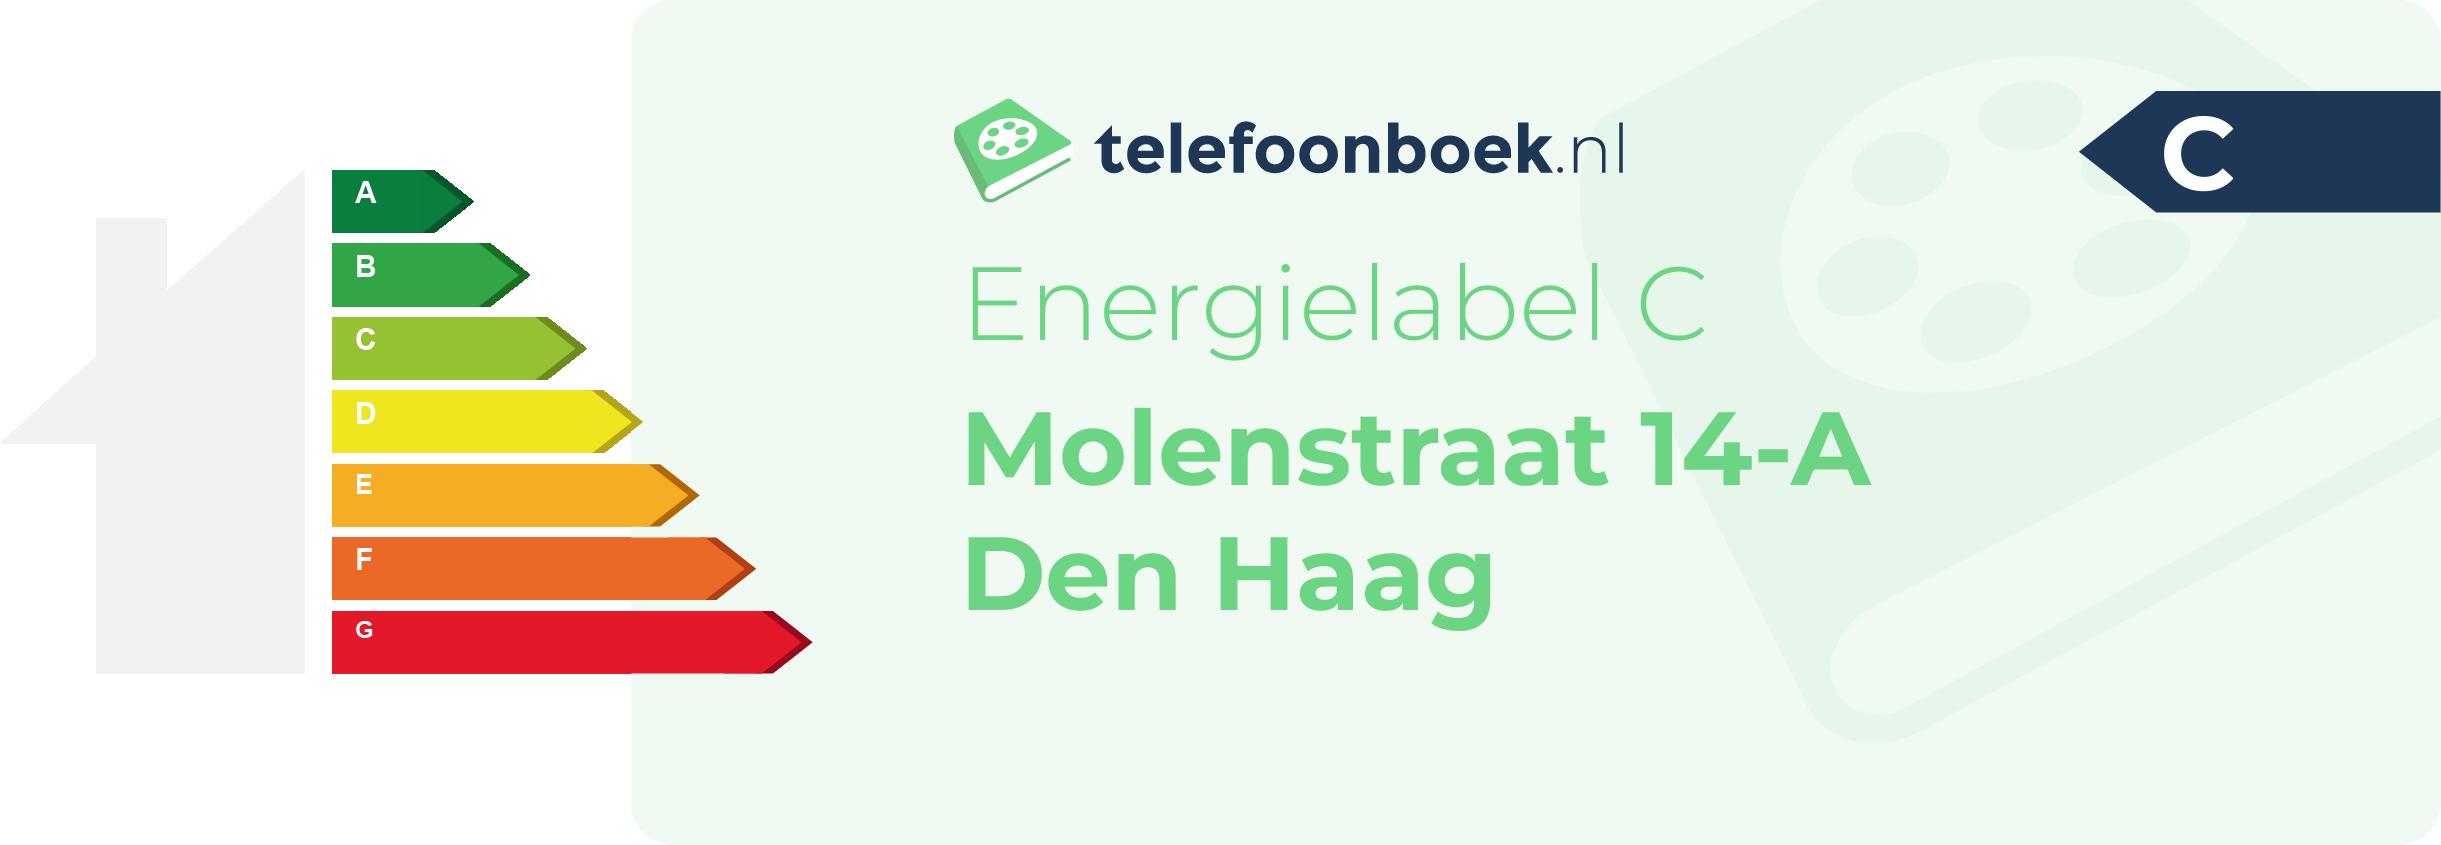 Energielabel Molenstraat 14-A Den Haag